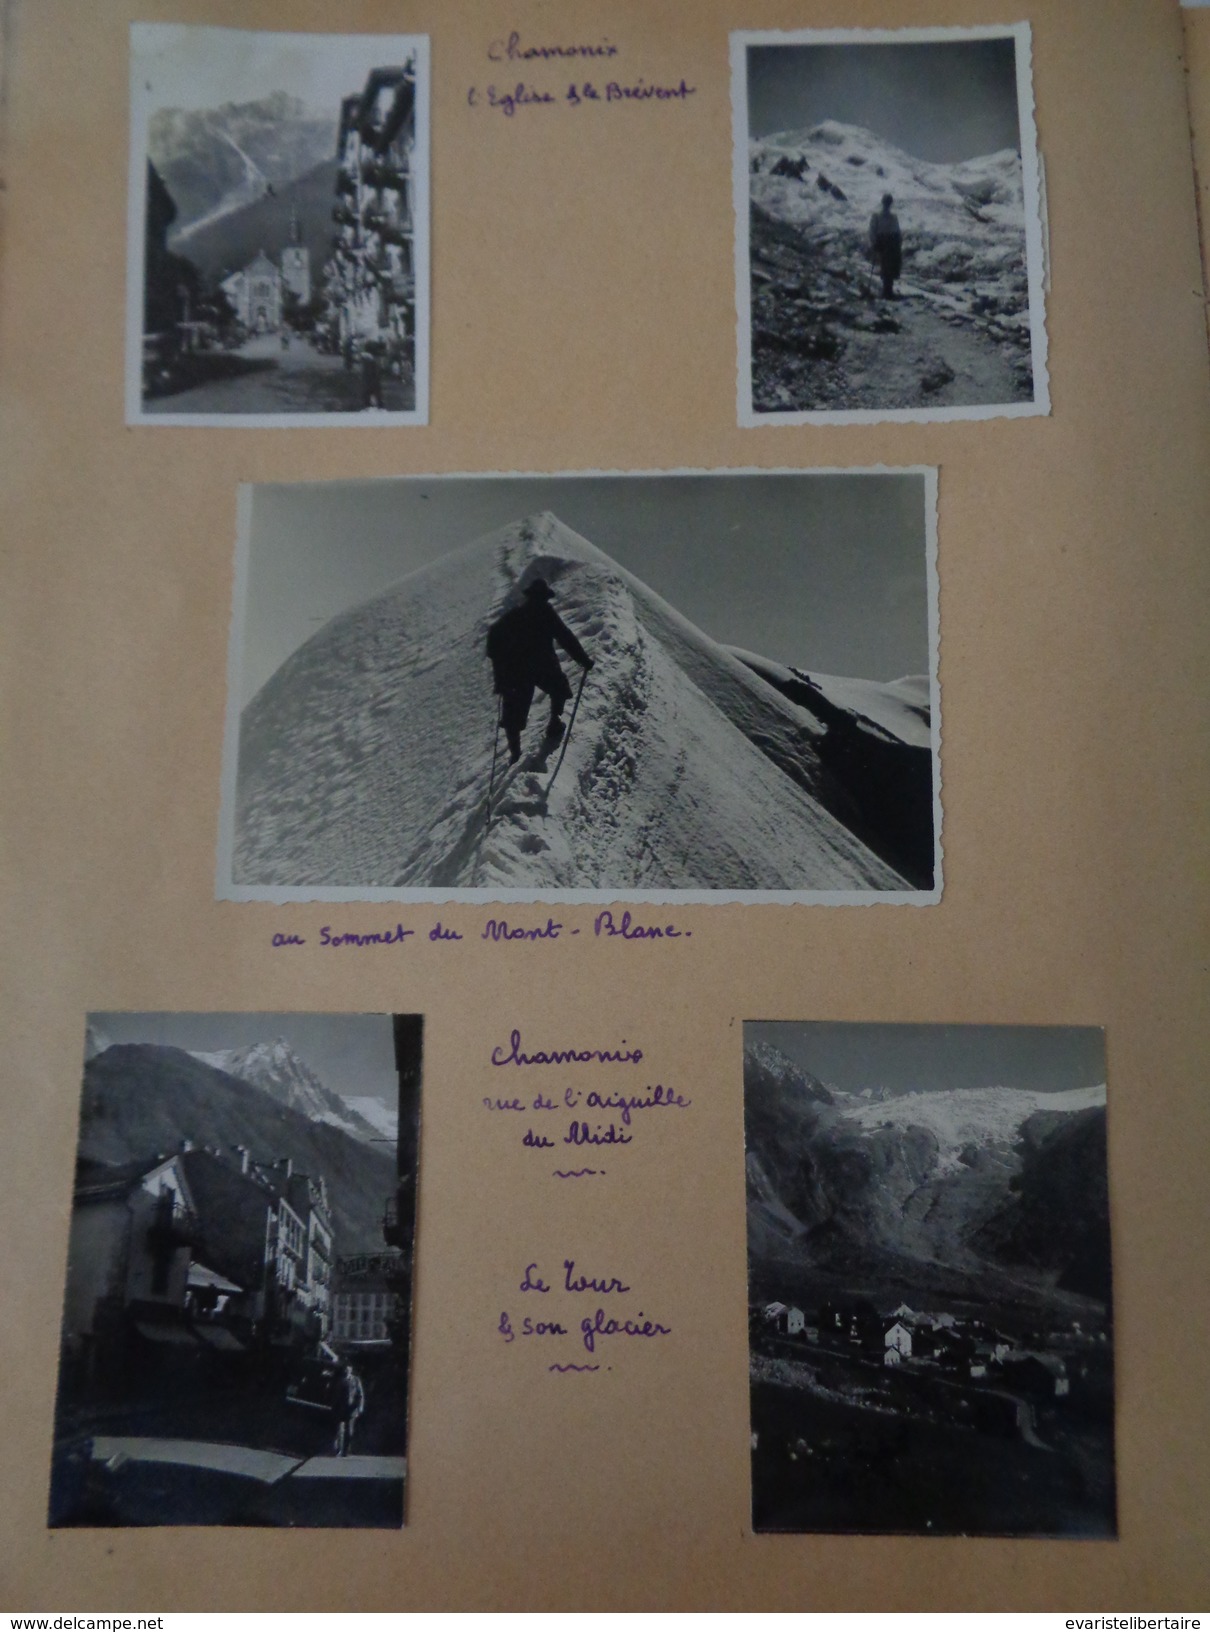 Album /cartes postales,photos de la Haute SAVOIE ,ALPES MARITIMES ,179 cartes et photos